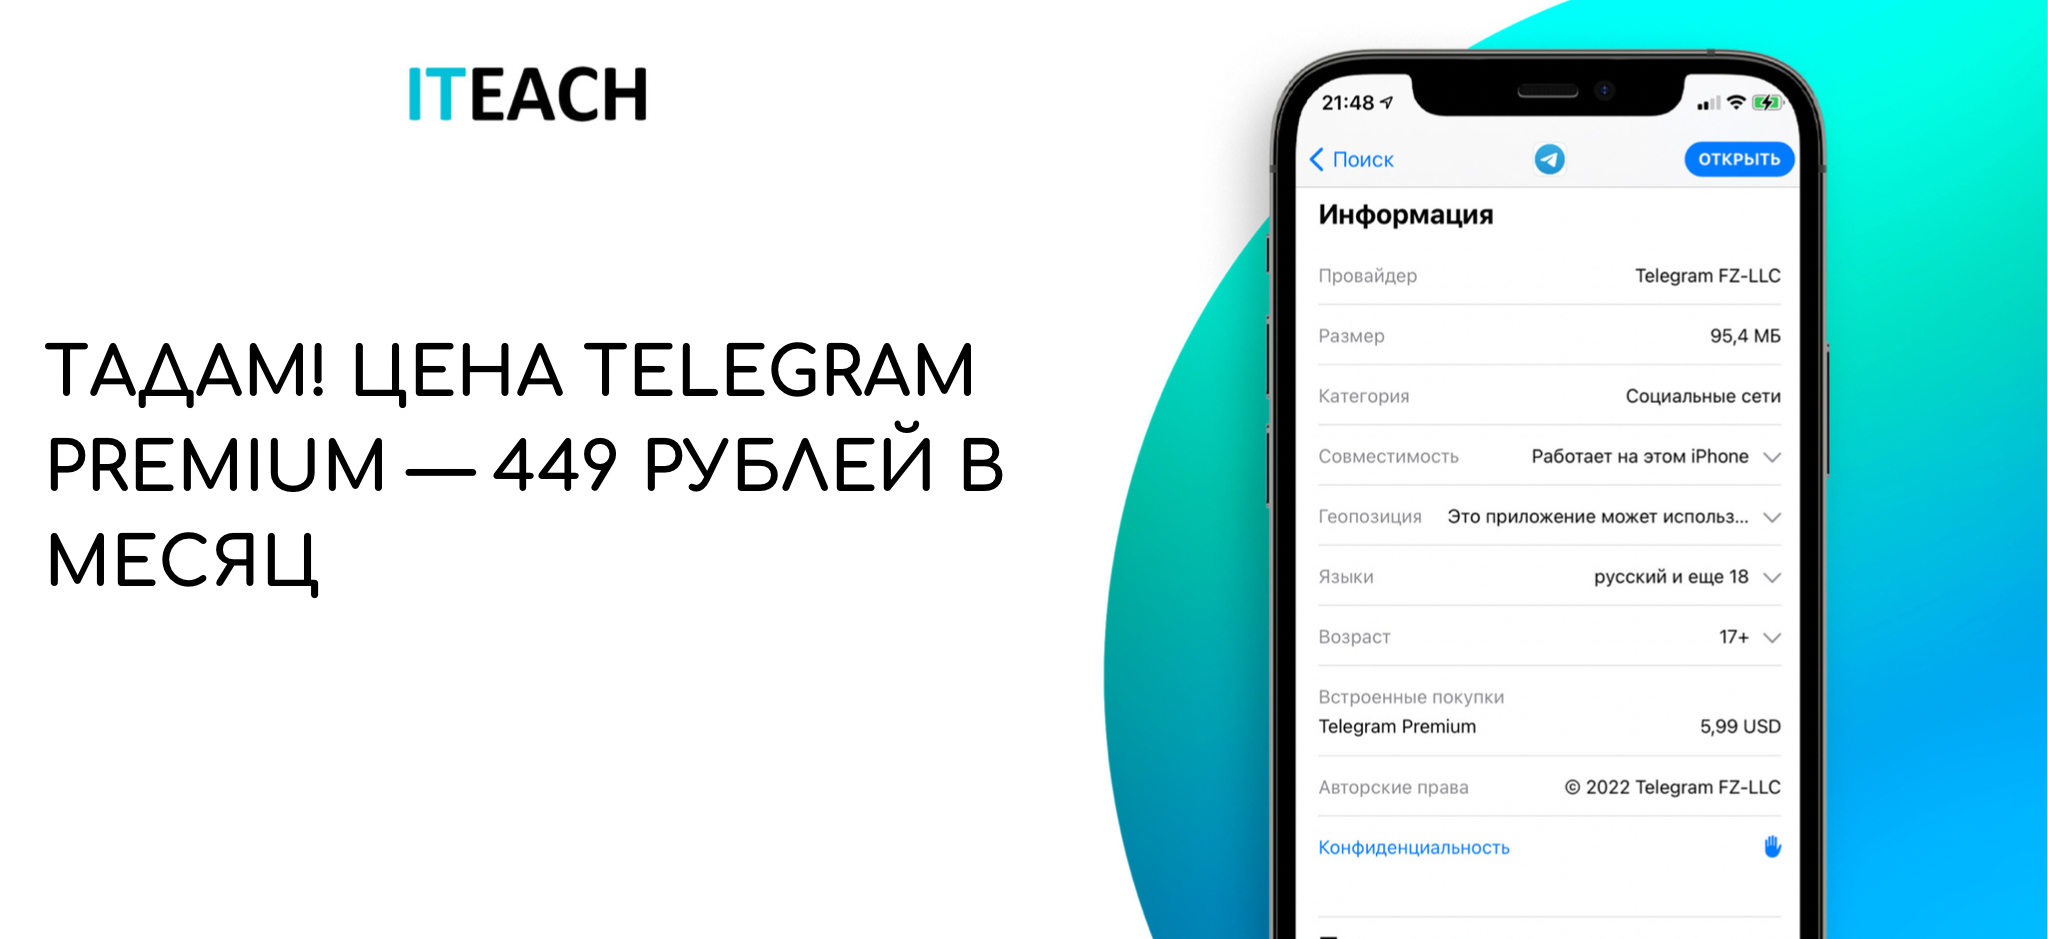 Скачать телеграмм премиум на андроид бесплатно последняя версия на русском без вирусов фото 98